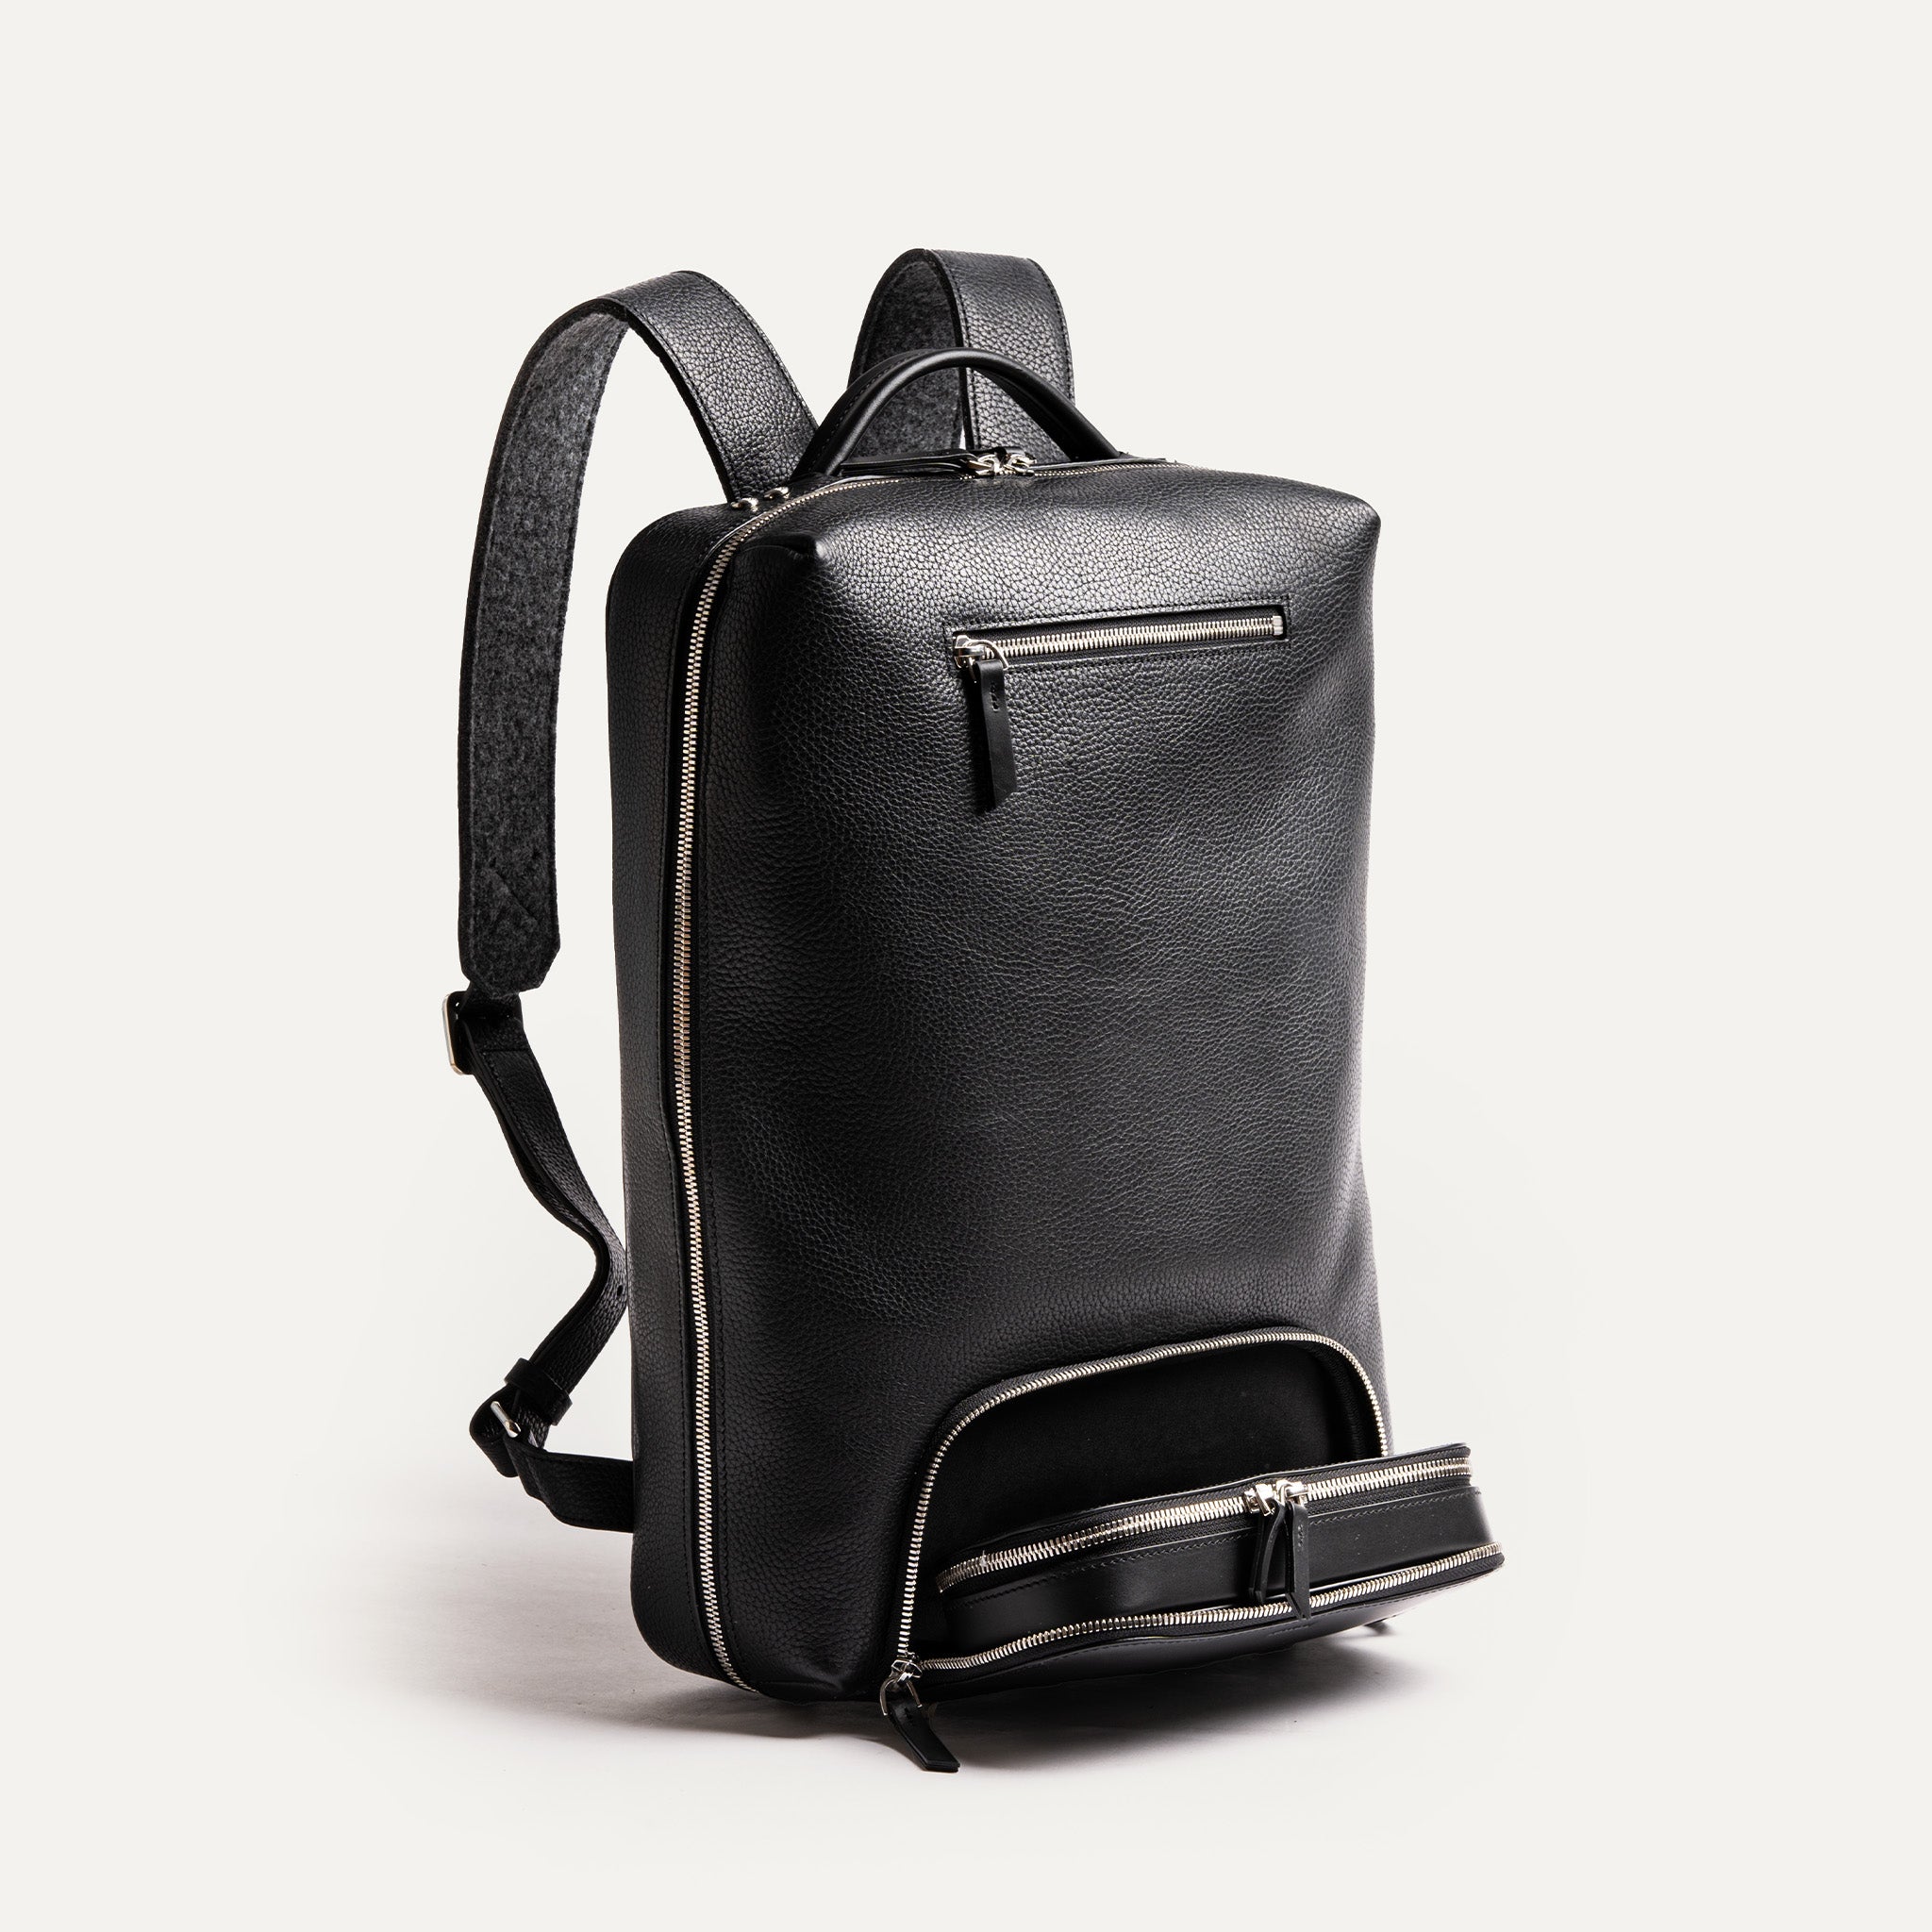 Le design minimaliste et épuré de ce sac à dos en cuir noir en fait un accessoire tendance Il est suffisamment spacieux pour transporter tous vos essentiels quotidien ou professionnel